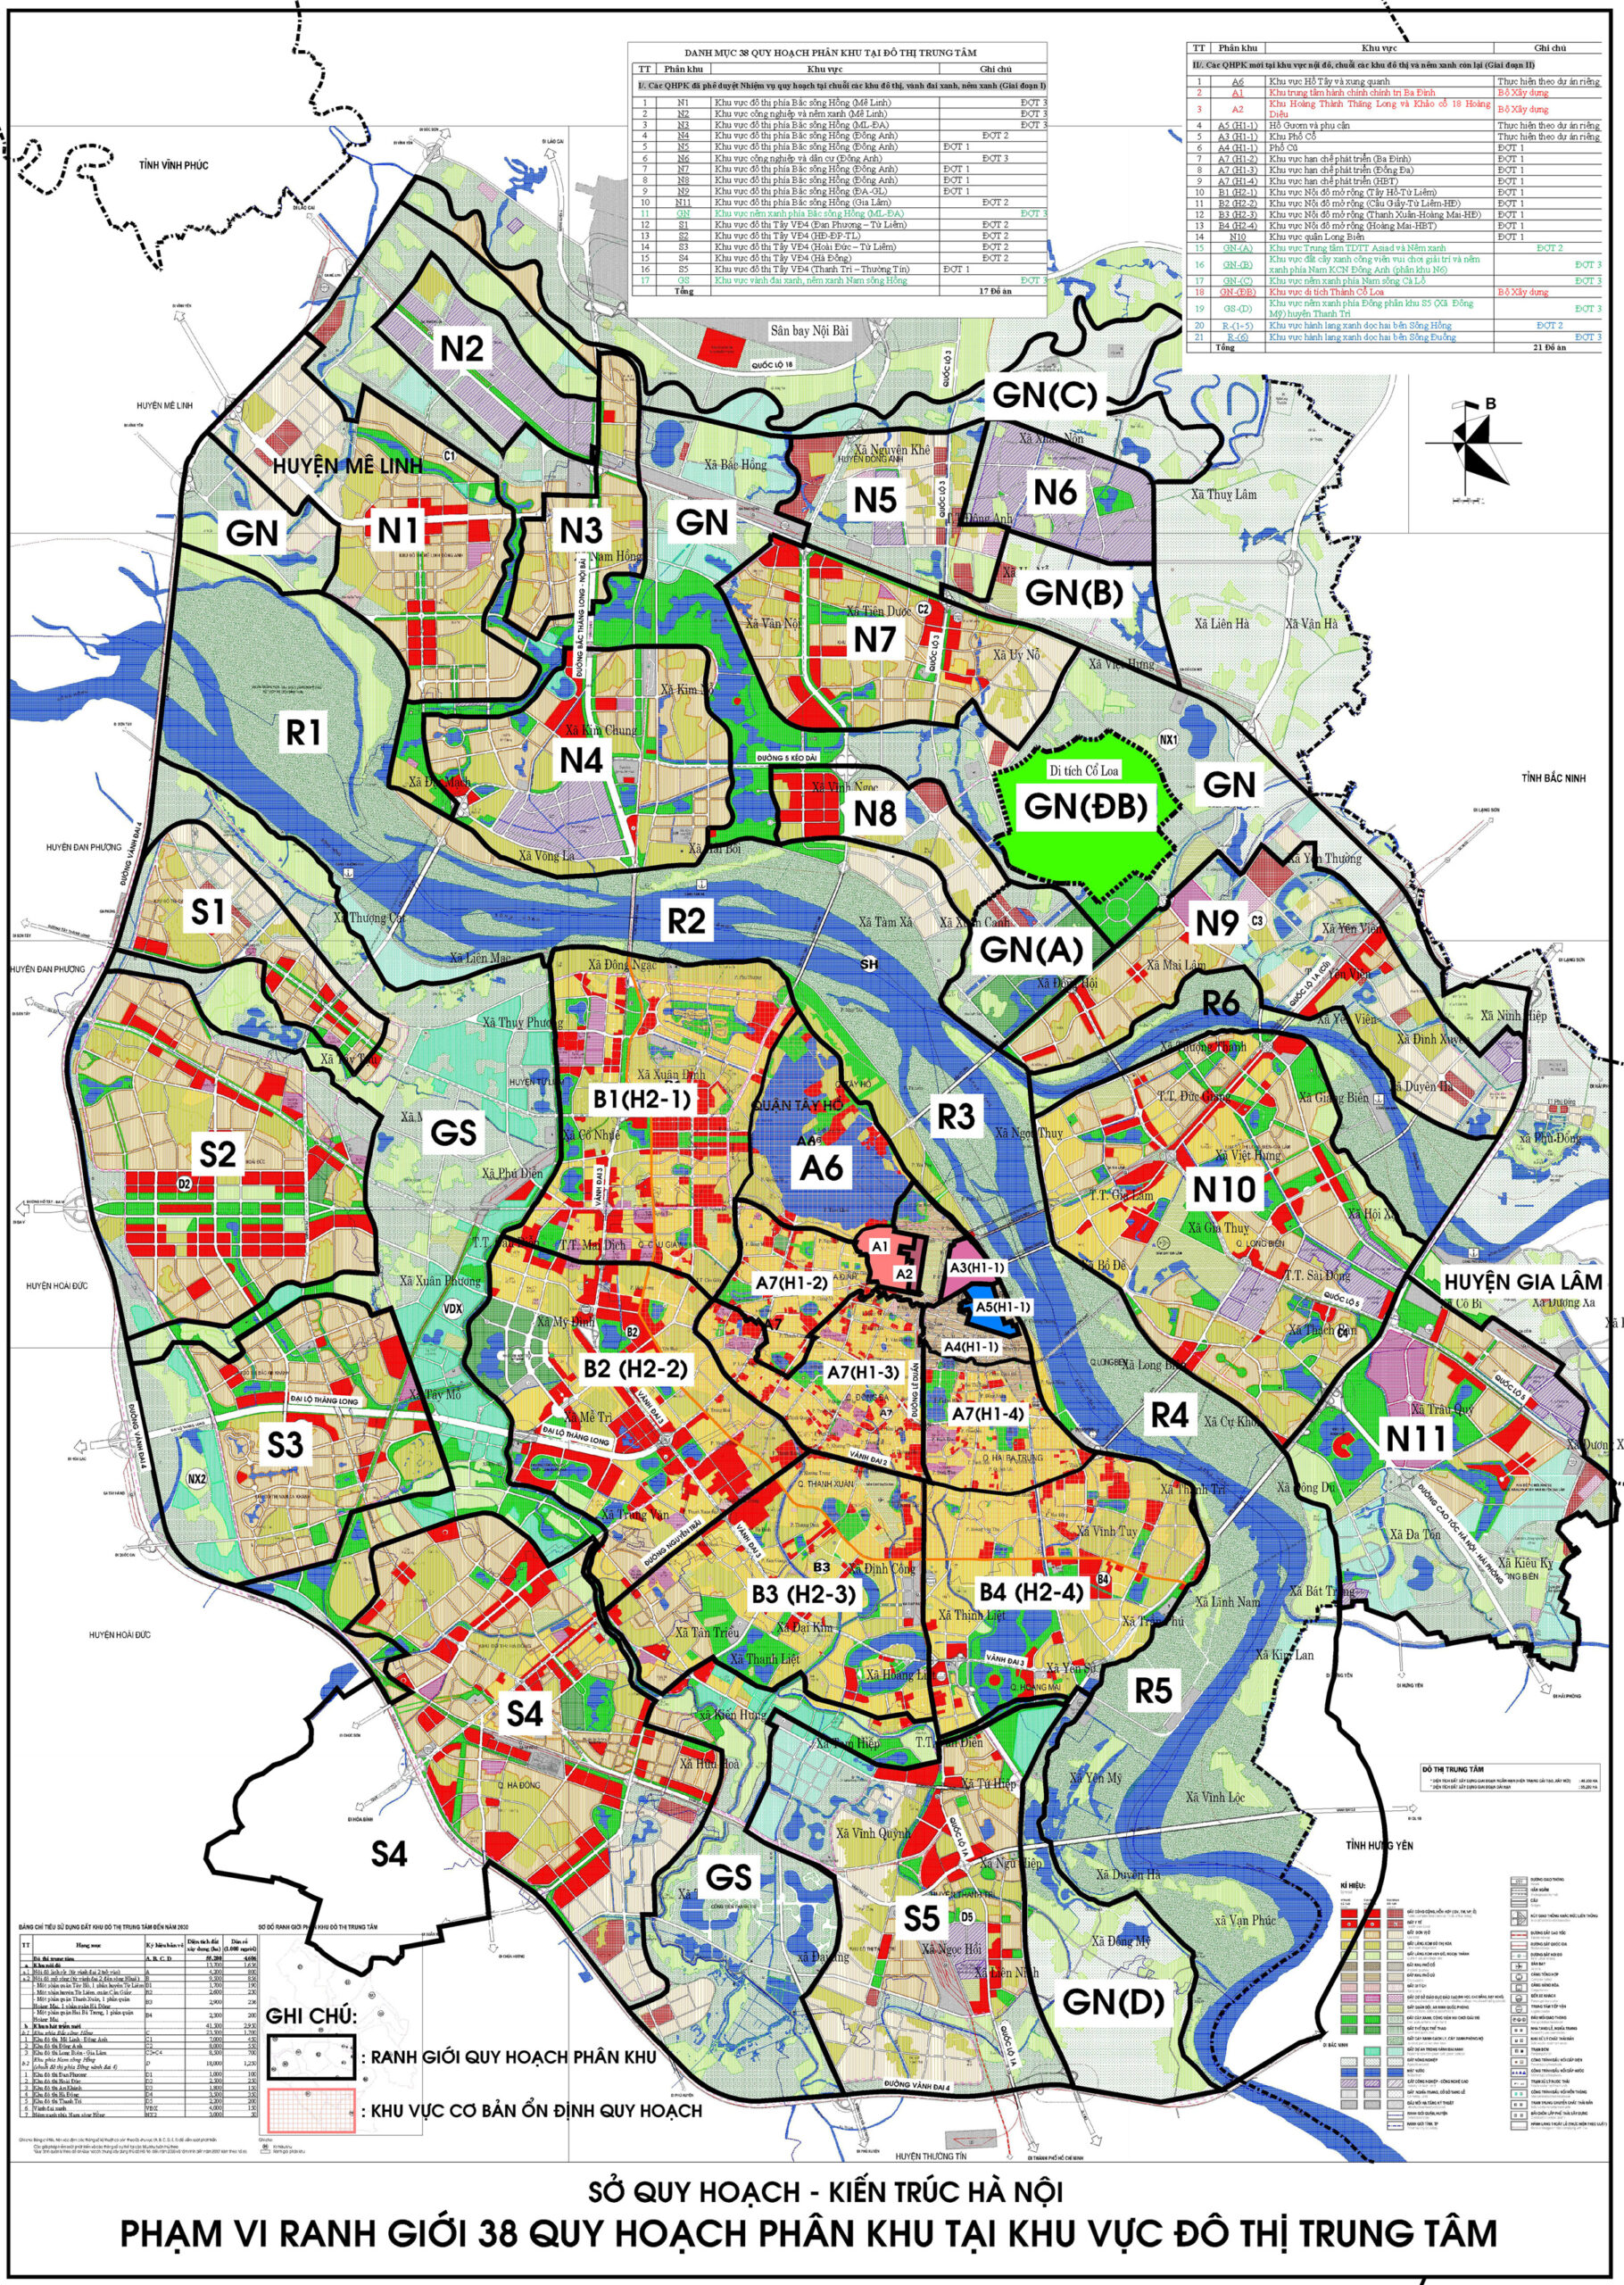 Khám phá bản đồ quy hoạch Hà Nội để tìm hiểu về những kế hoạch phát triển vô cùng hấp dẫn của Thủ đô Việt Nam. Hình ảnh này sẽ giúp bạn visualize được tương lai sáng của thành phố!